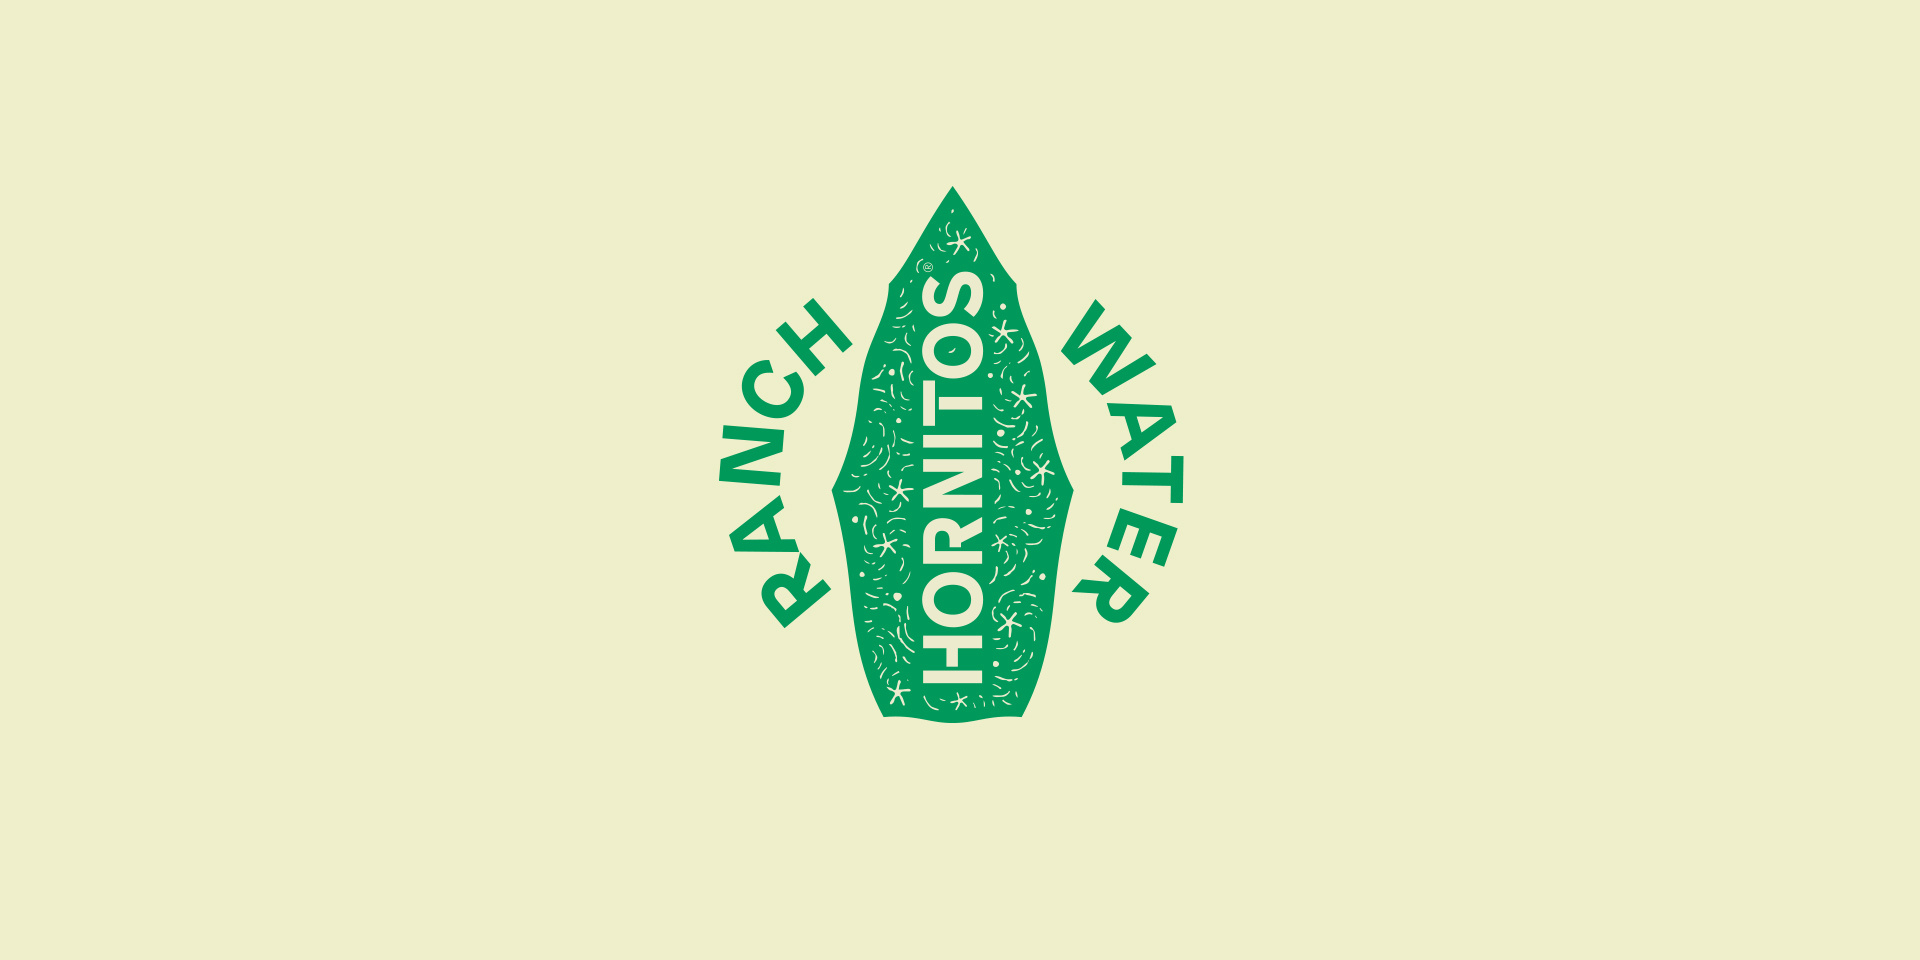 Hornitos Ranch Water